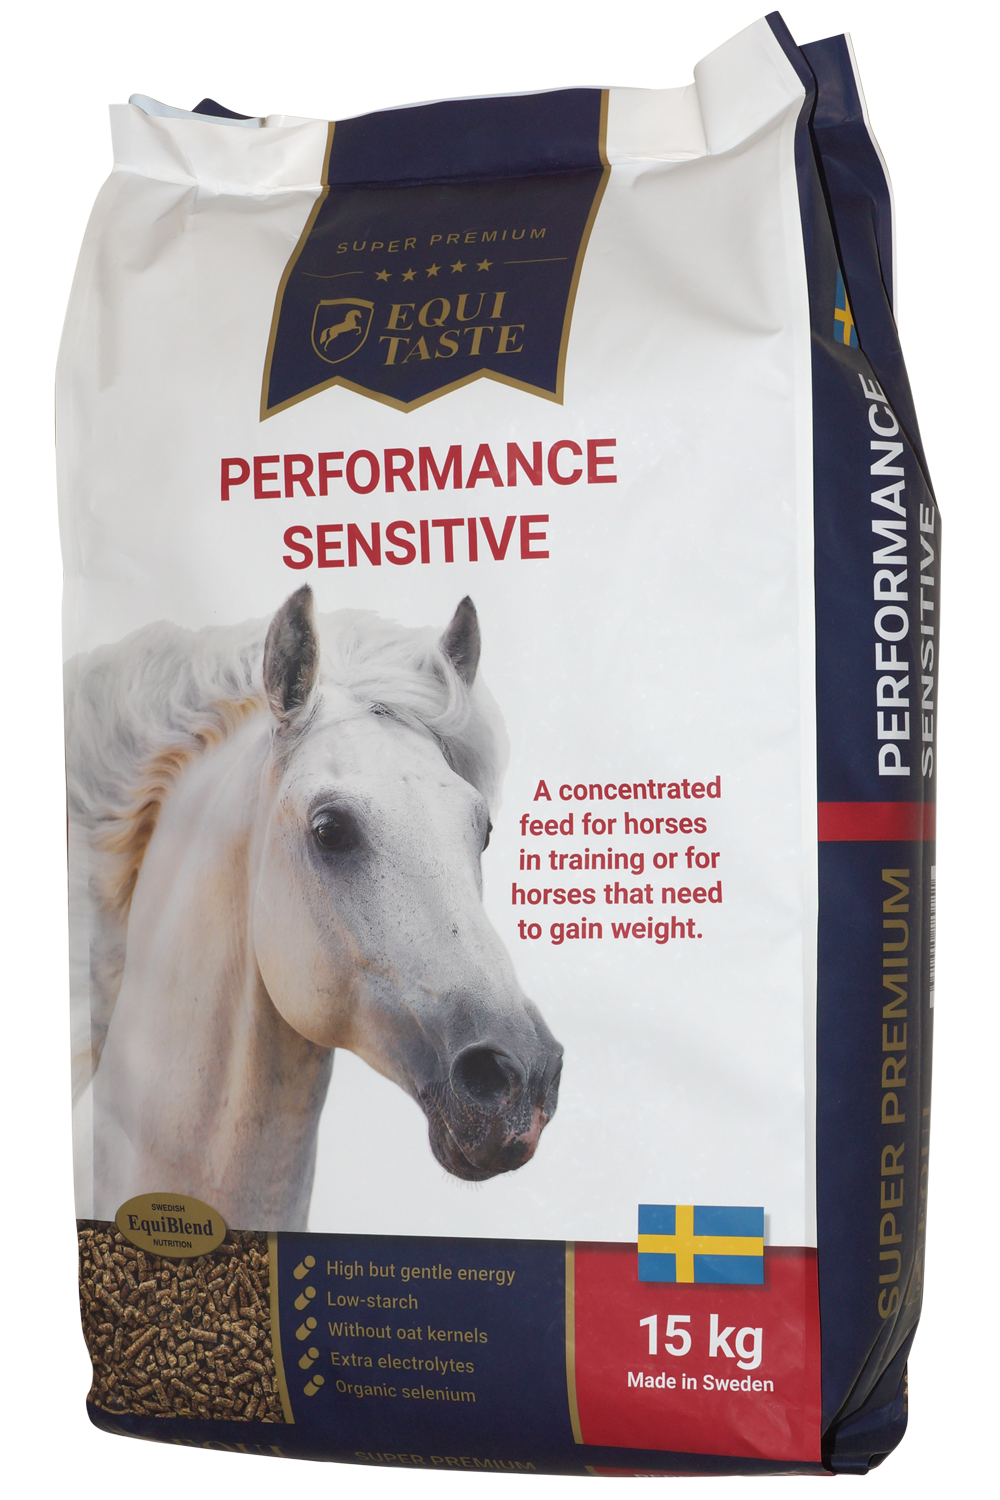 EquiTaste Performance Sensitive - Aliment pour cheval, aliment concentré, complément alimentaire pour cheval